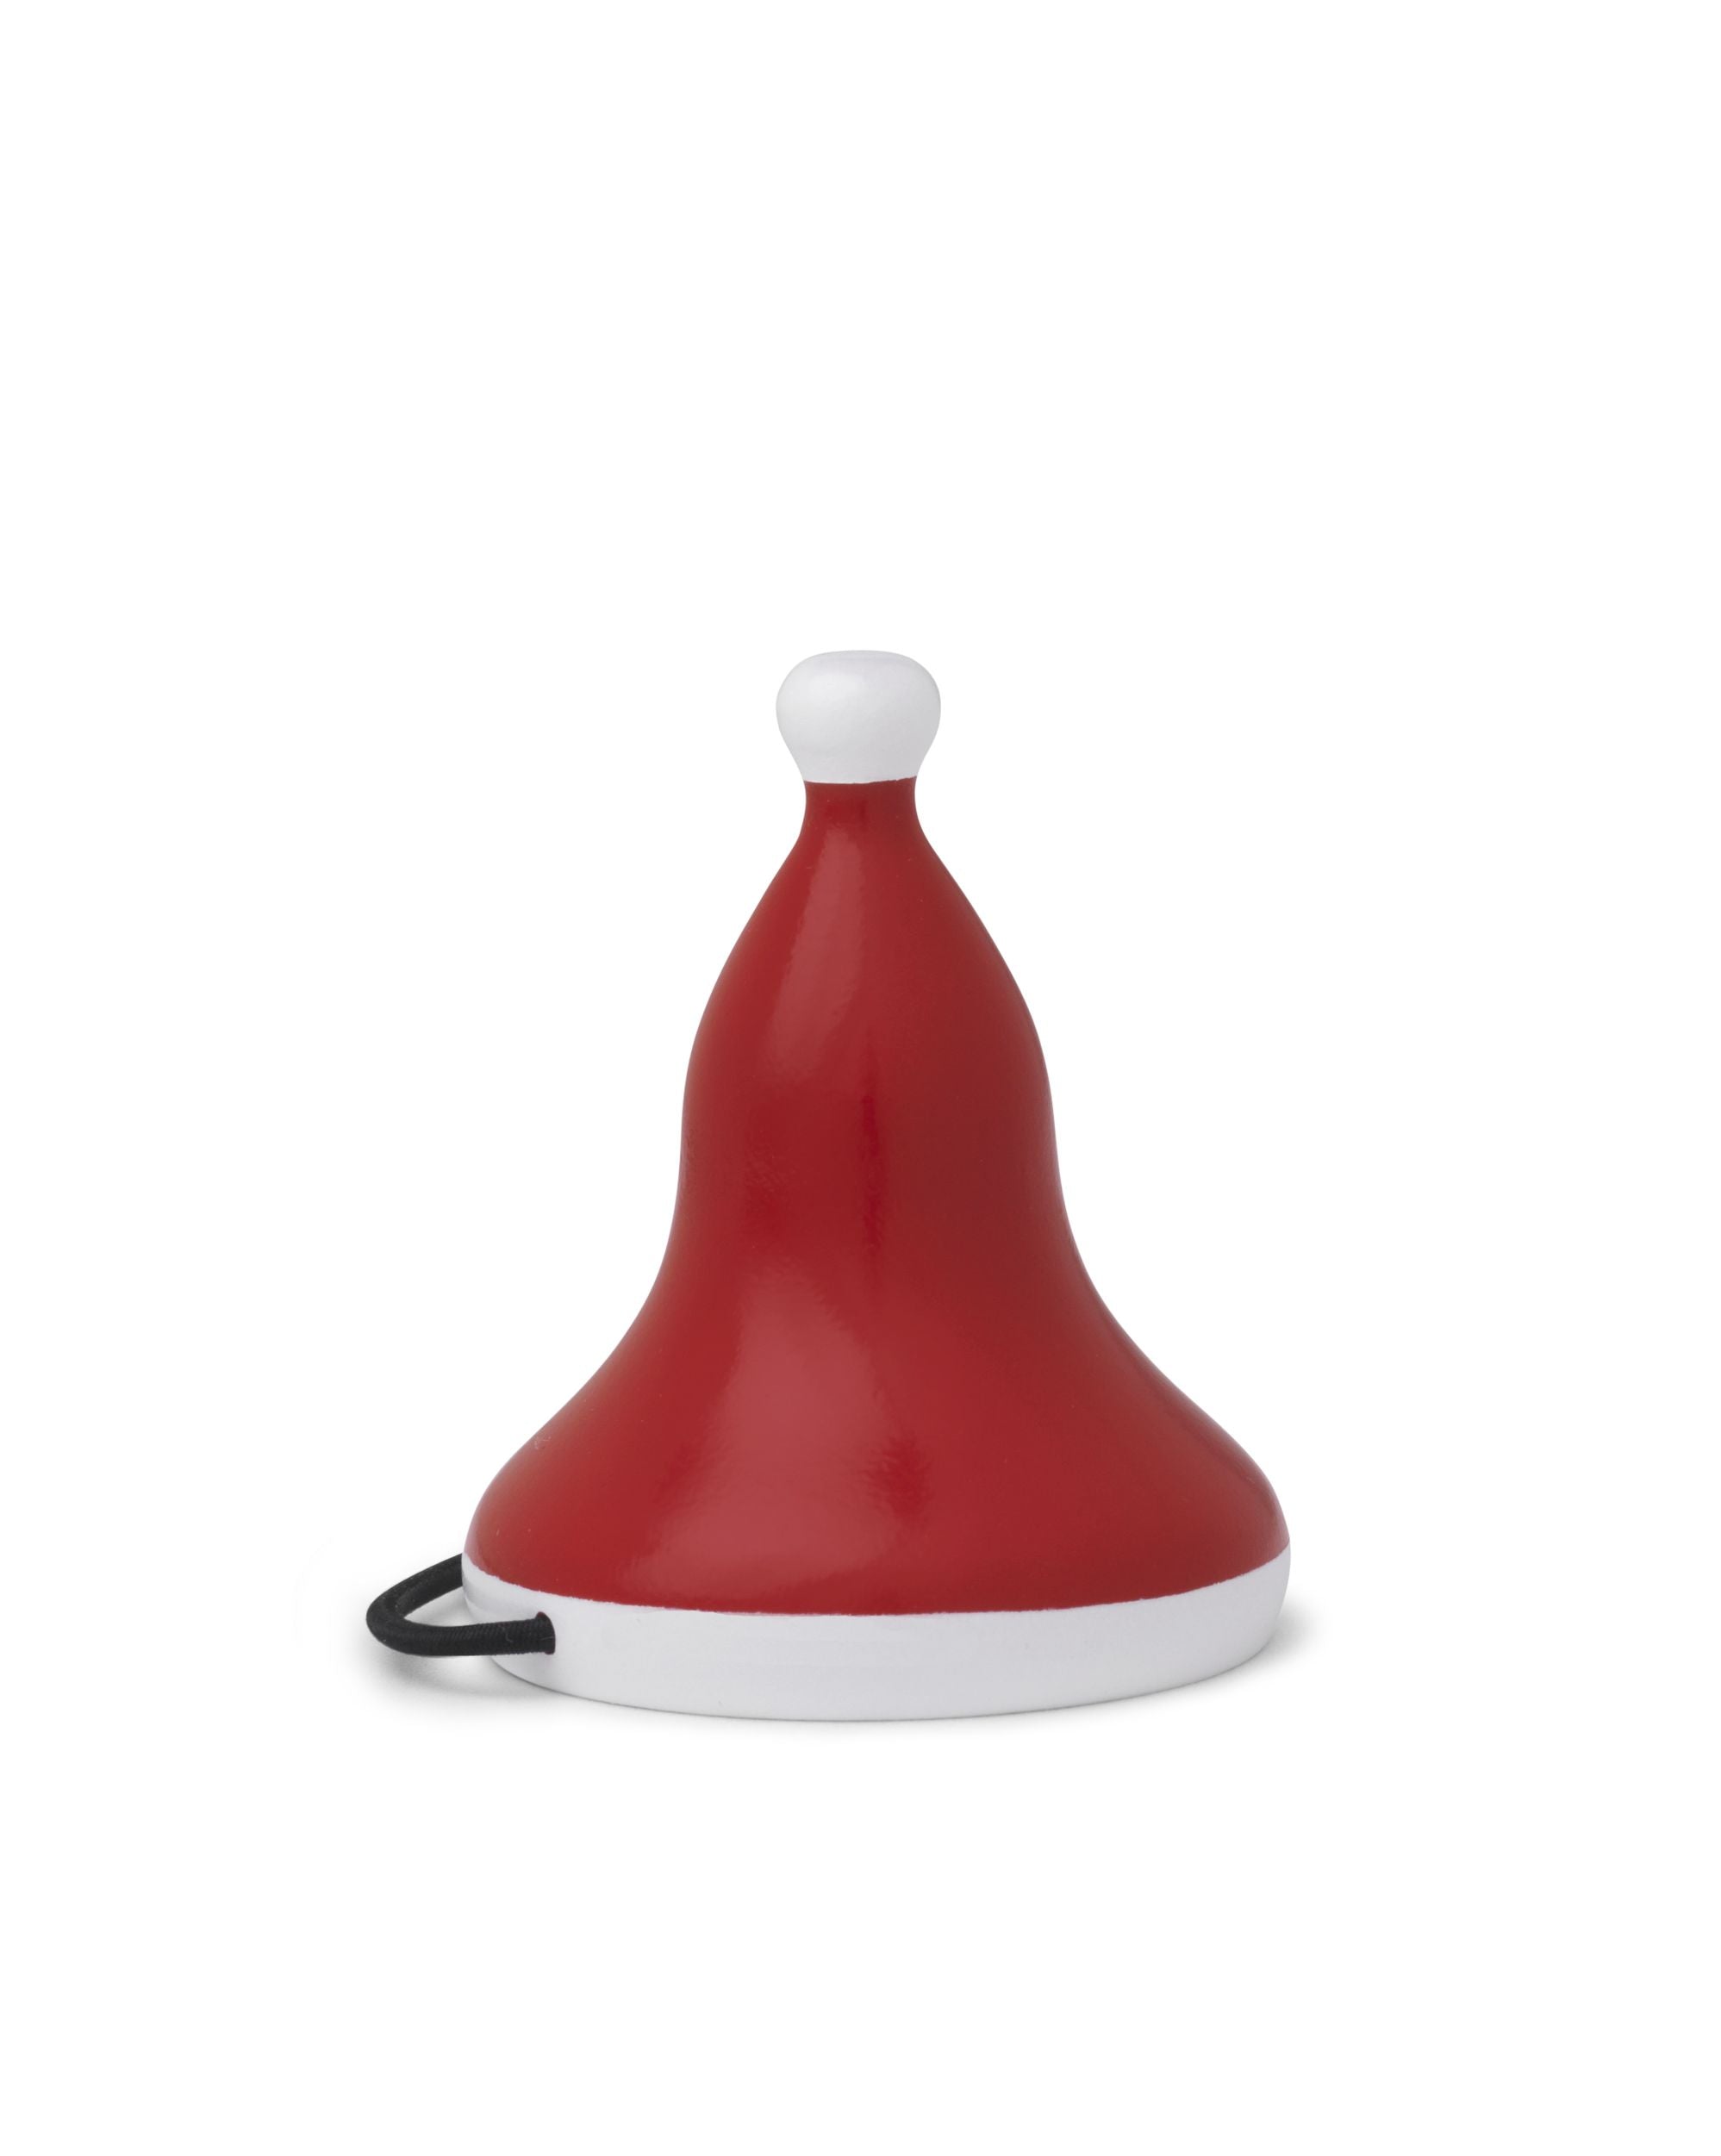 Kay Bojesen Santa's Cap Small Ø5 cm rojo/blanco